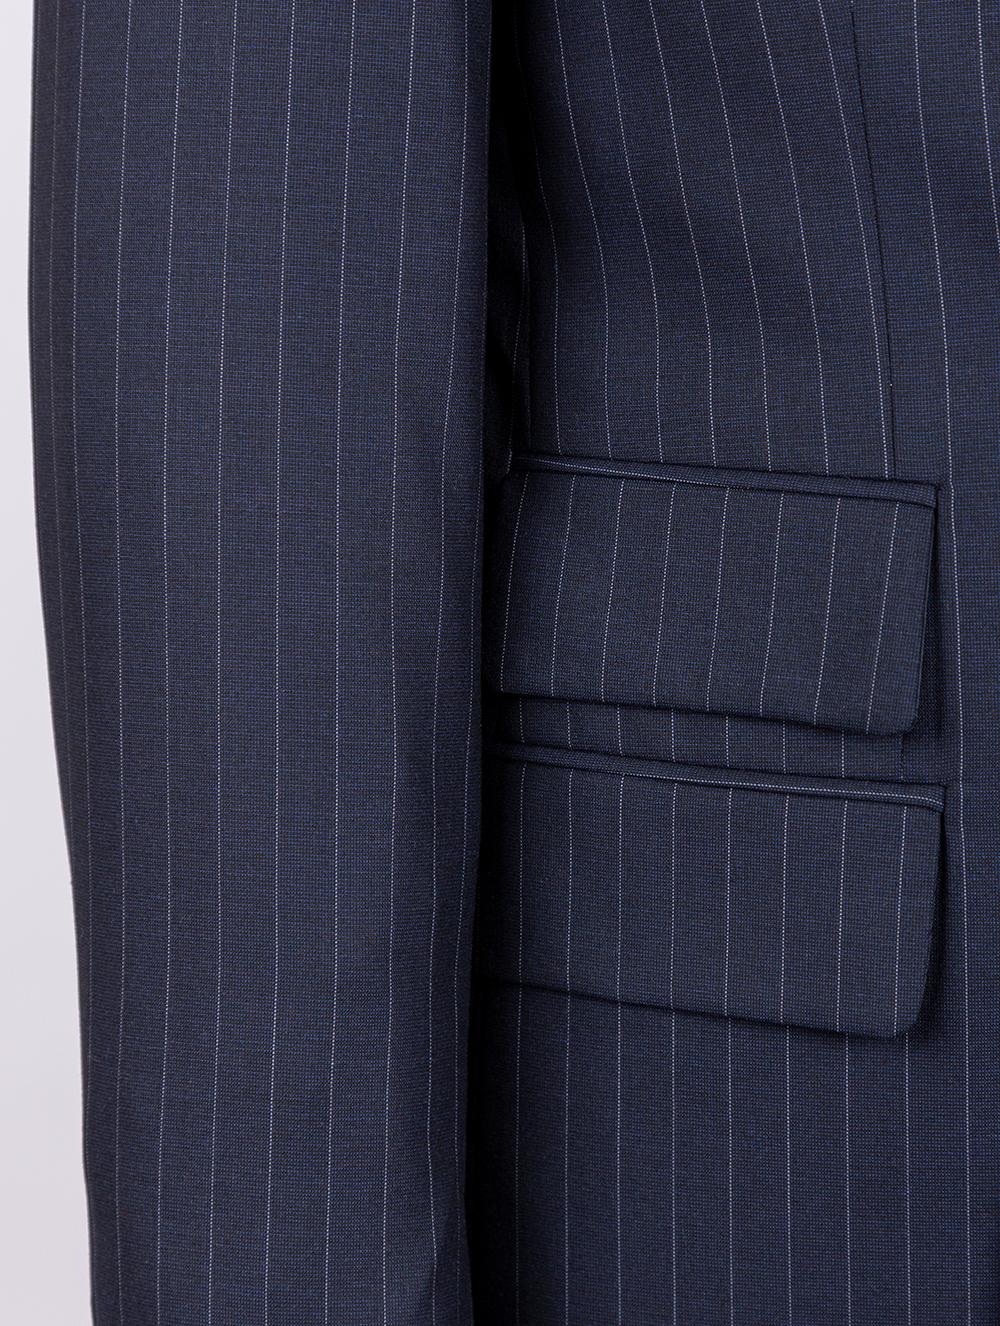 Edison Blue Set Blazer Linen Suit